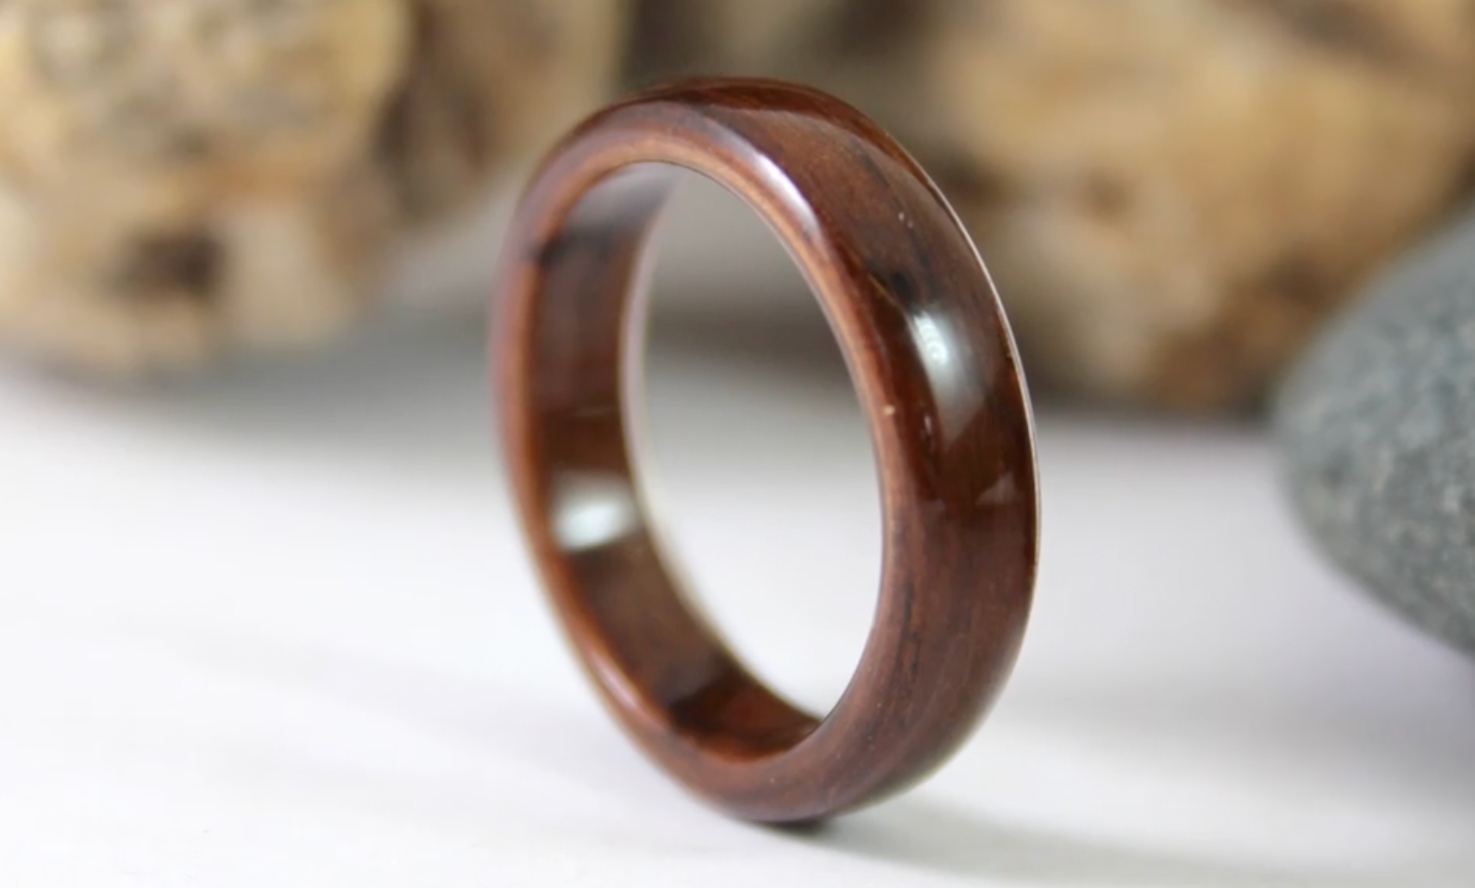 wooden rings, wood rings, wood rings South Africa, touchwood, wood wedding rings